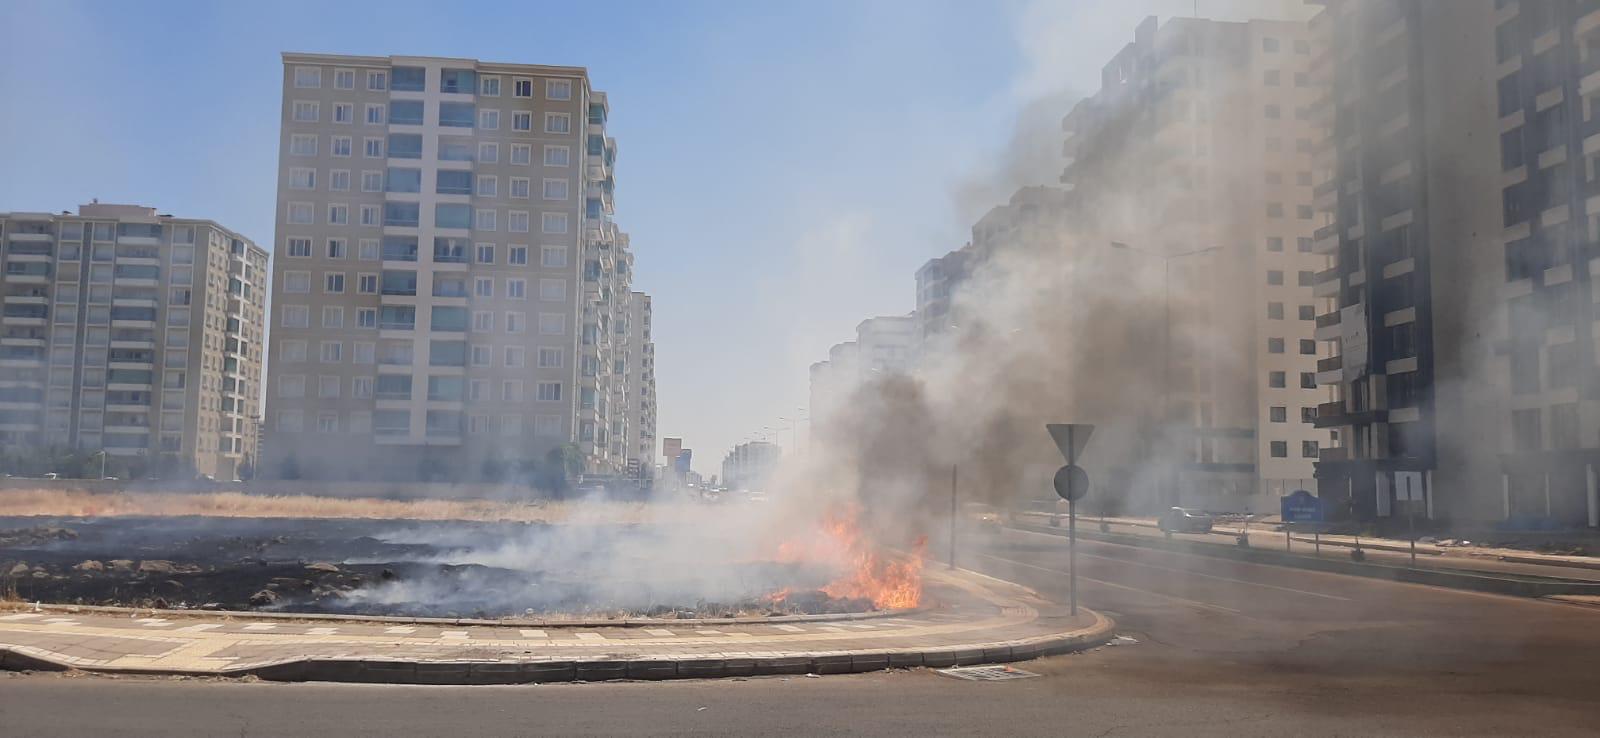 VİDEO - Şehir ortasında yükselen alevler yangın değil, anız yakılmasından